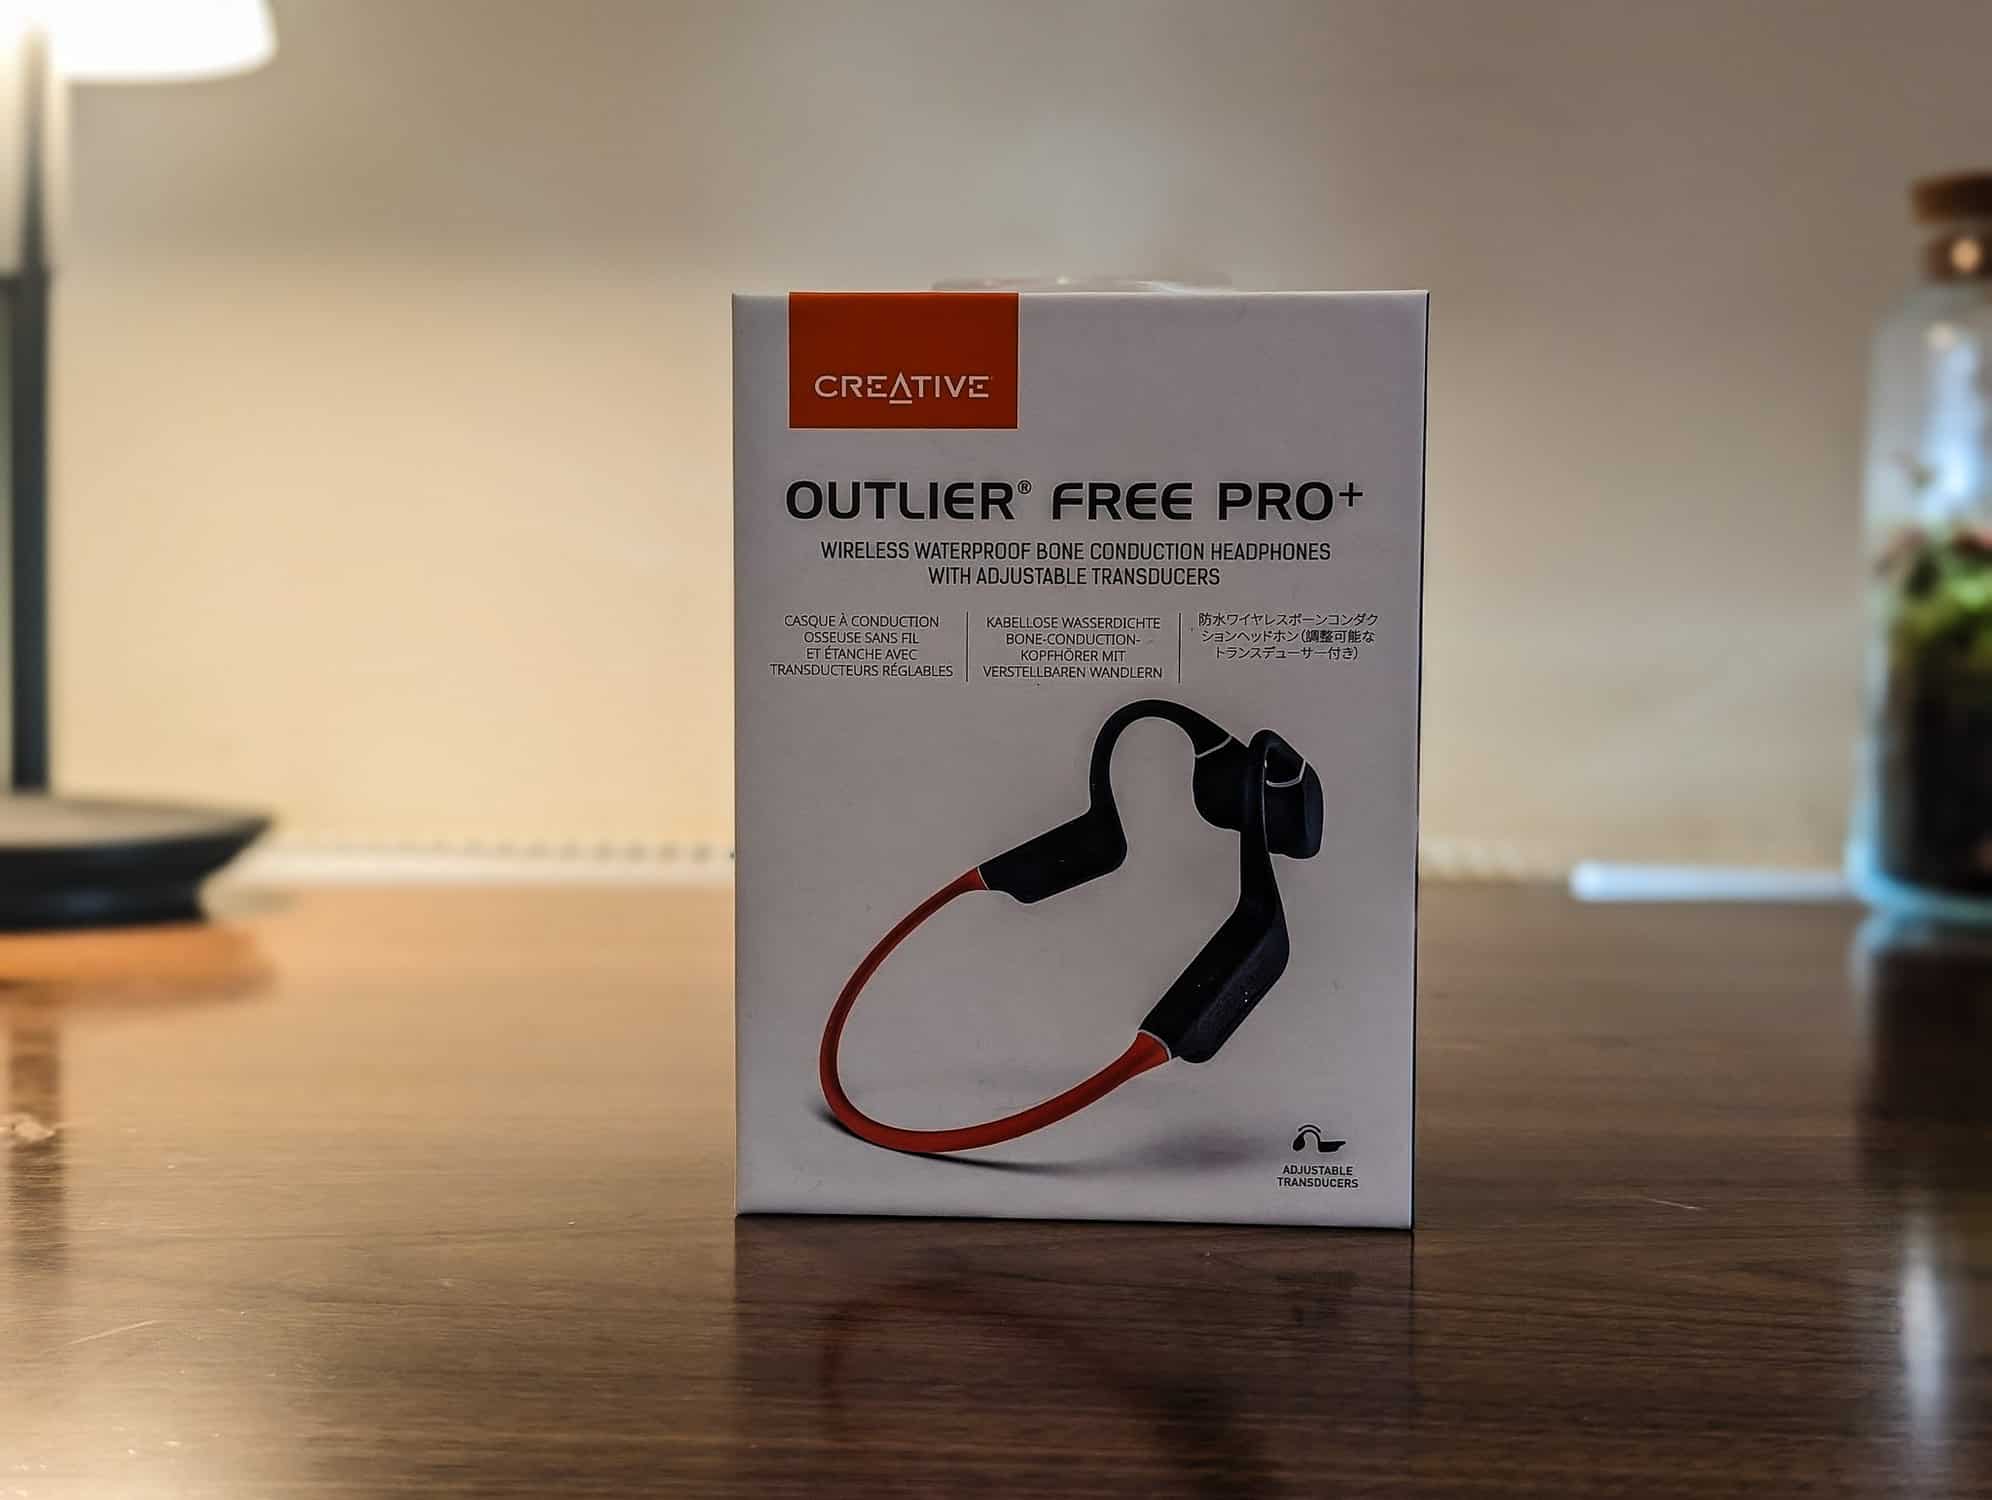 Creative Outlier Free Pro Plus Bone Conduction Headphones Review